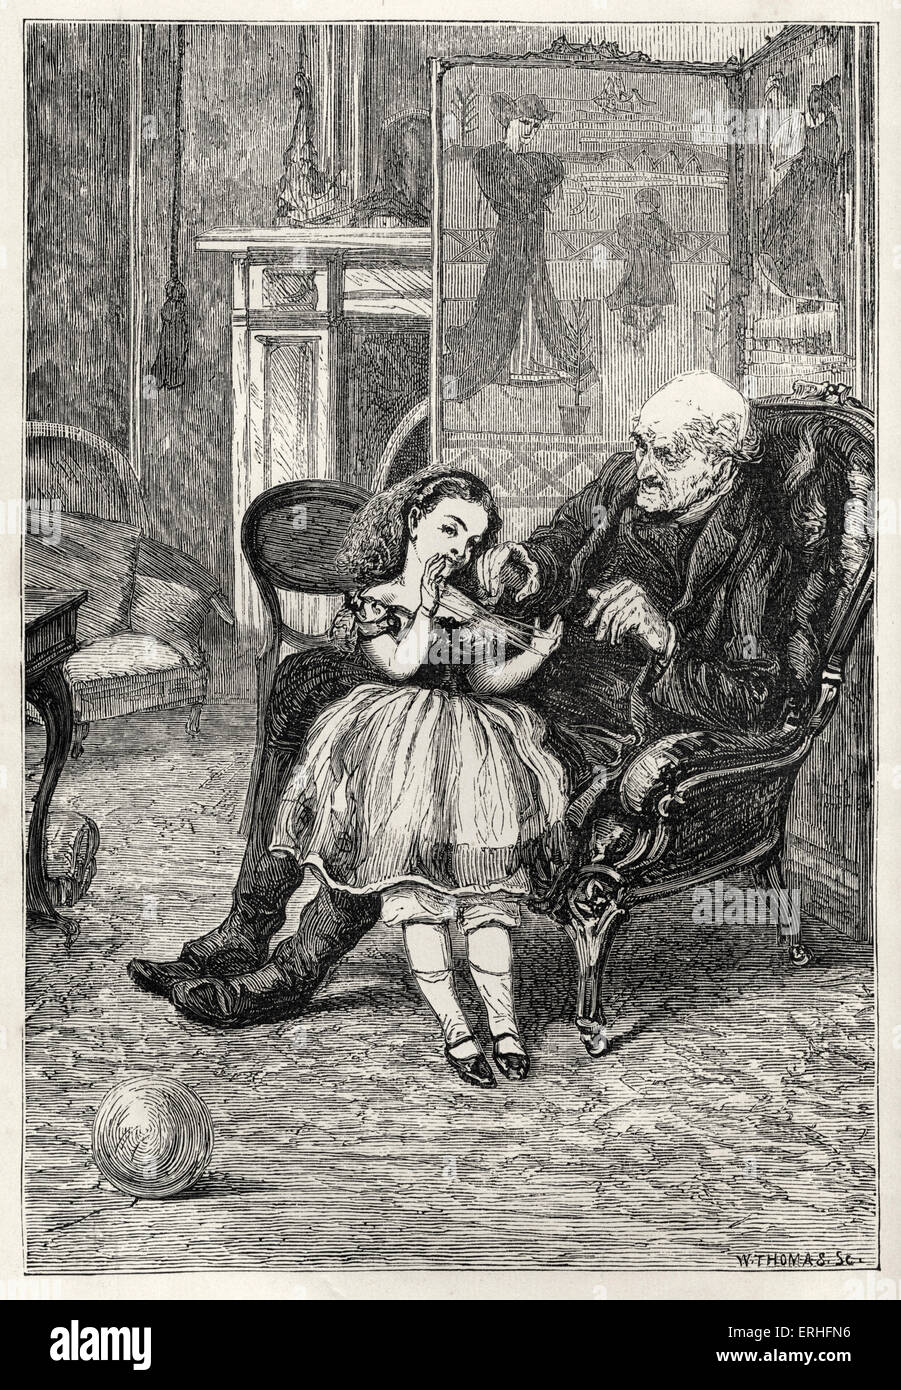 Anthony Trollope, der letzten Chronik der Barset. Abbildung beschriftet "Posy und ihr Großpapa" von 1867 Originalausgabe. Stockfoto